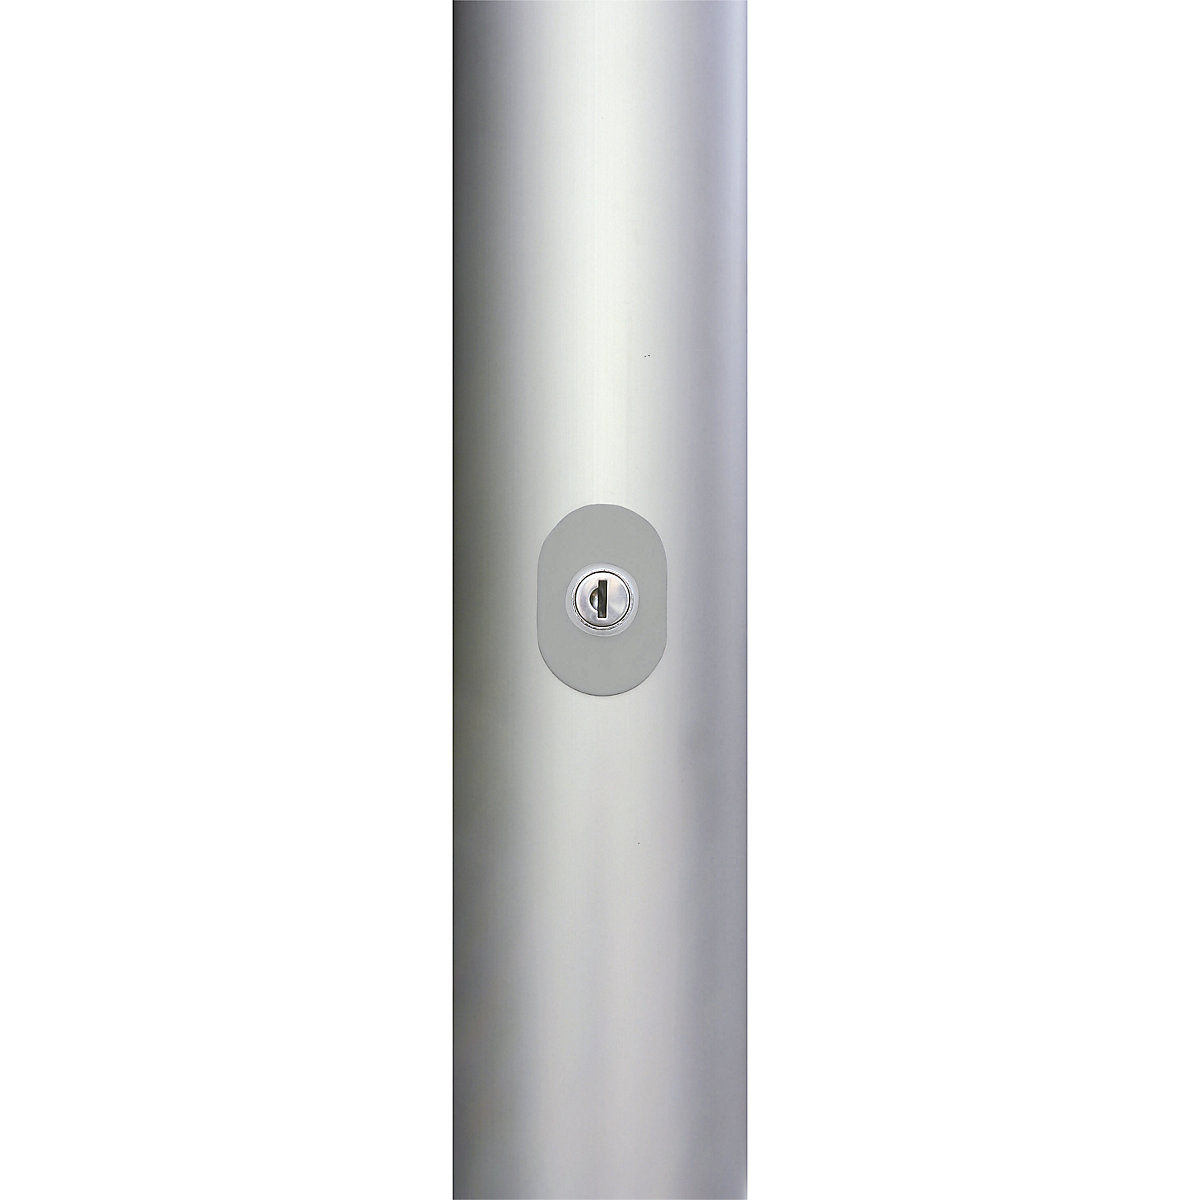 PIRAT aluminium flag pole – Mannus (Product illustration 5)-4